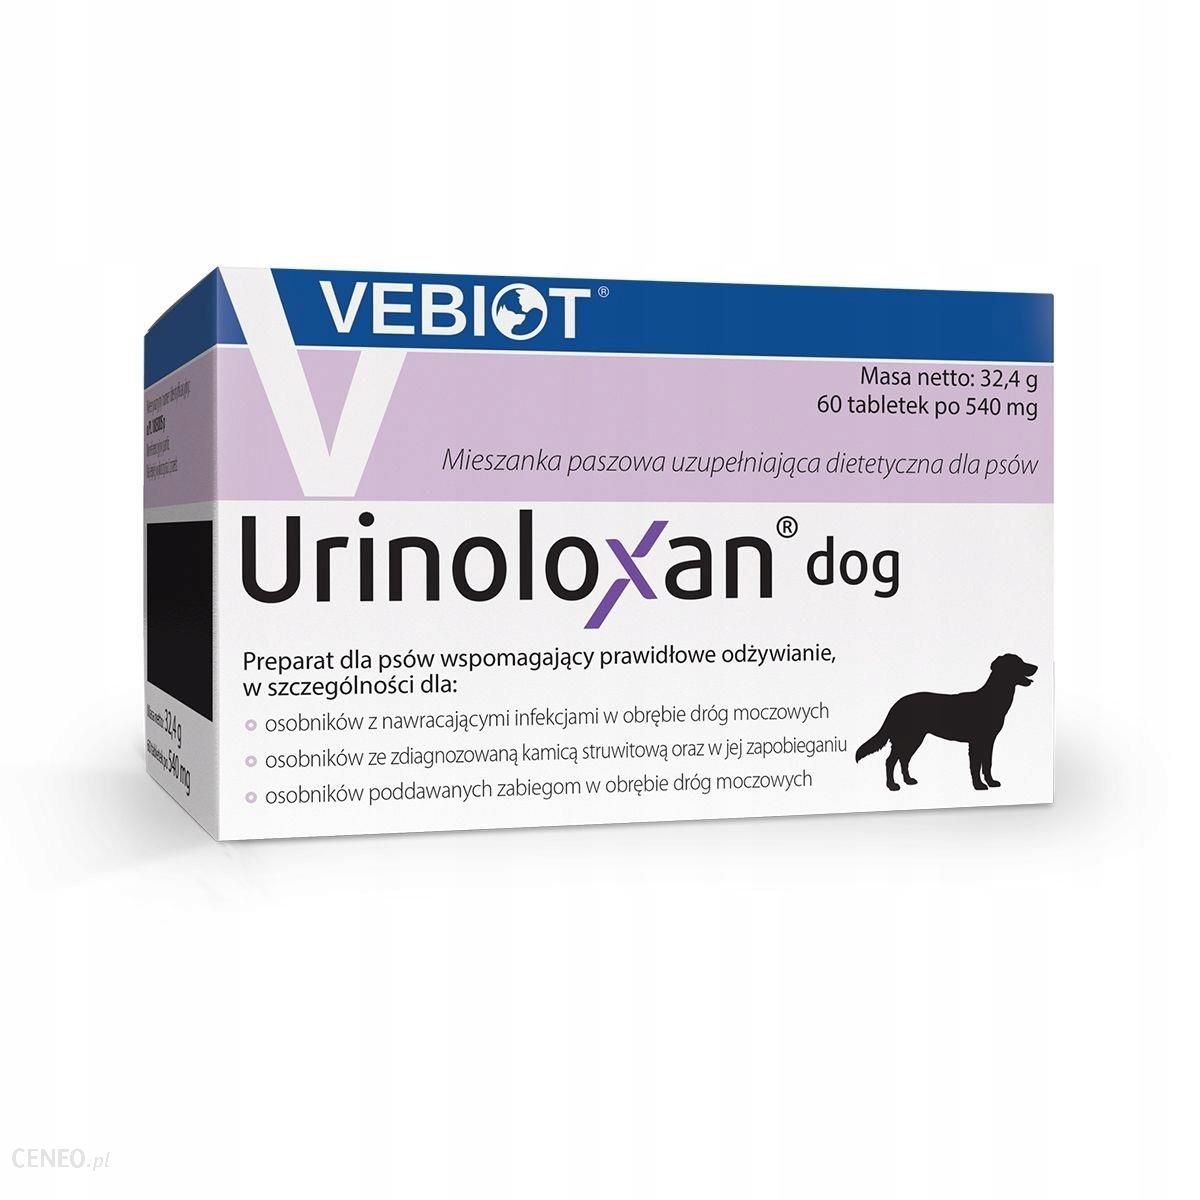 Vebiot Urinoloxan Dog 60 Tabletek